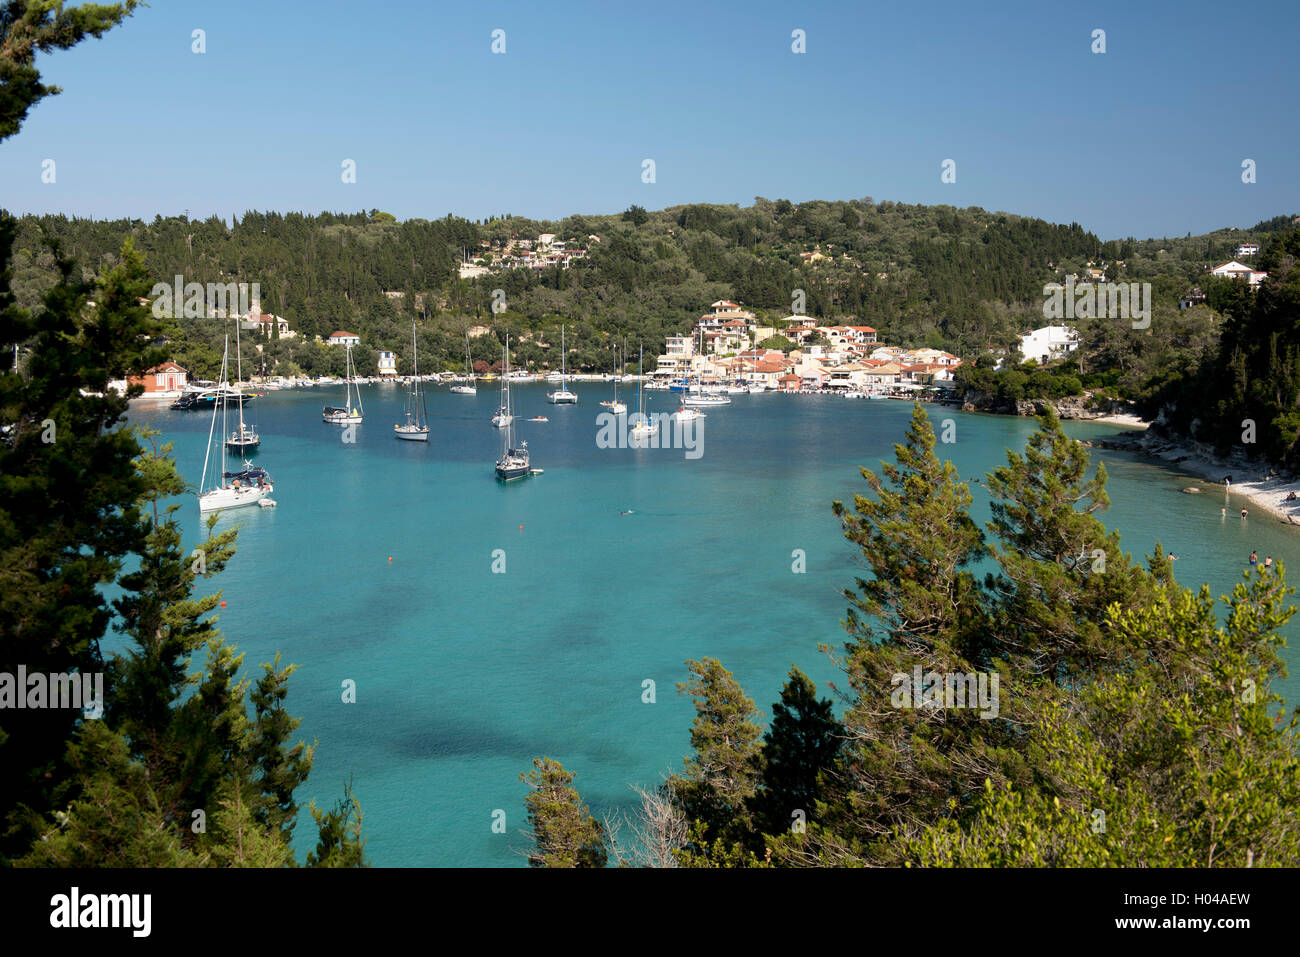 Una veduta aerea del porto di Lakka e barche ormeggiate, Paxos, Isole Ionie, isole greche, Grecia, Europa Foto Stock